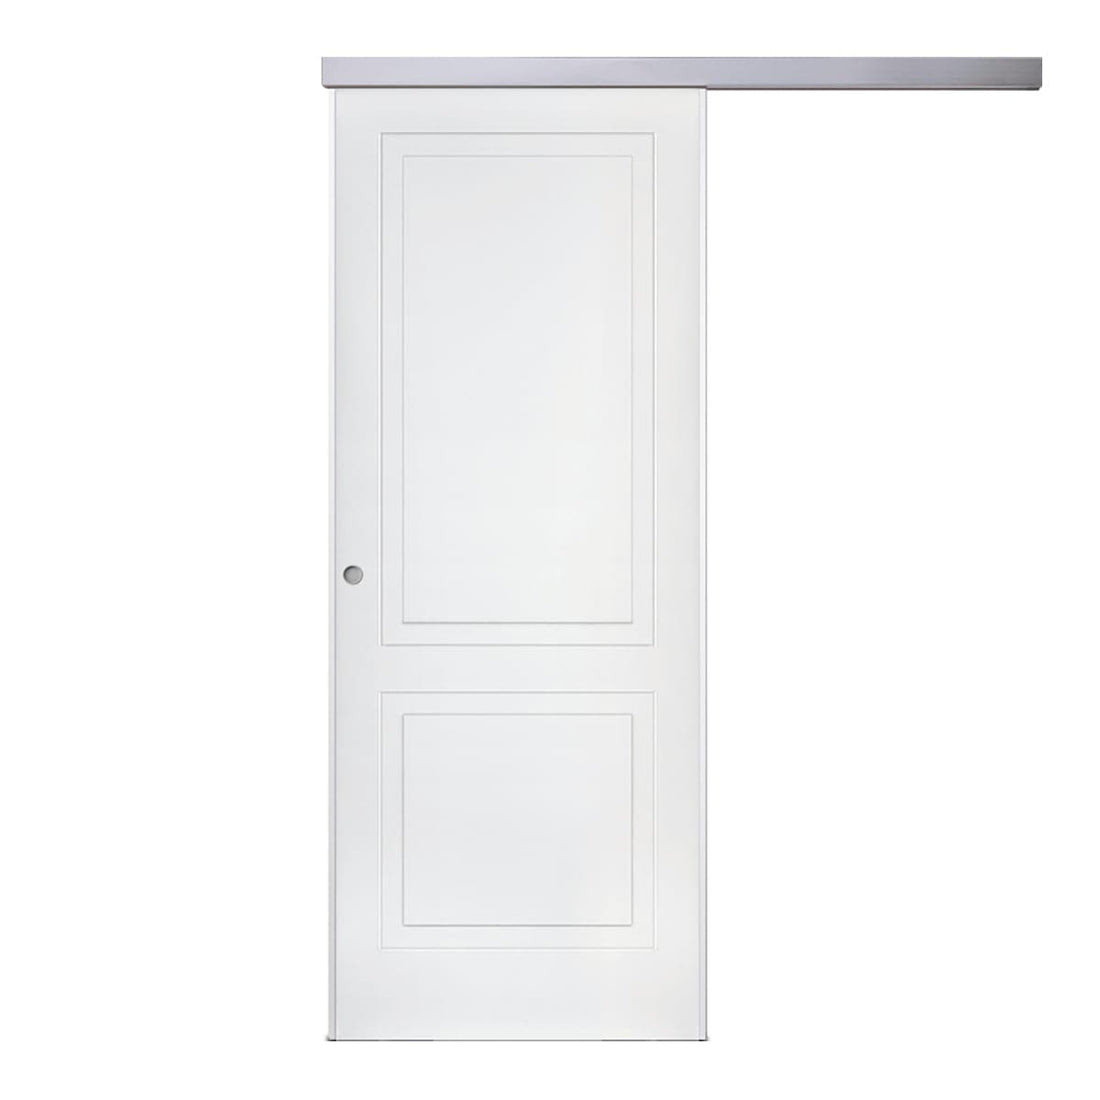 SEDNA SLIDING DOOR OUTSIDE WALL 210 X 80 WHITE LACQUERED - best price from Maltashopper.com BR450001903